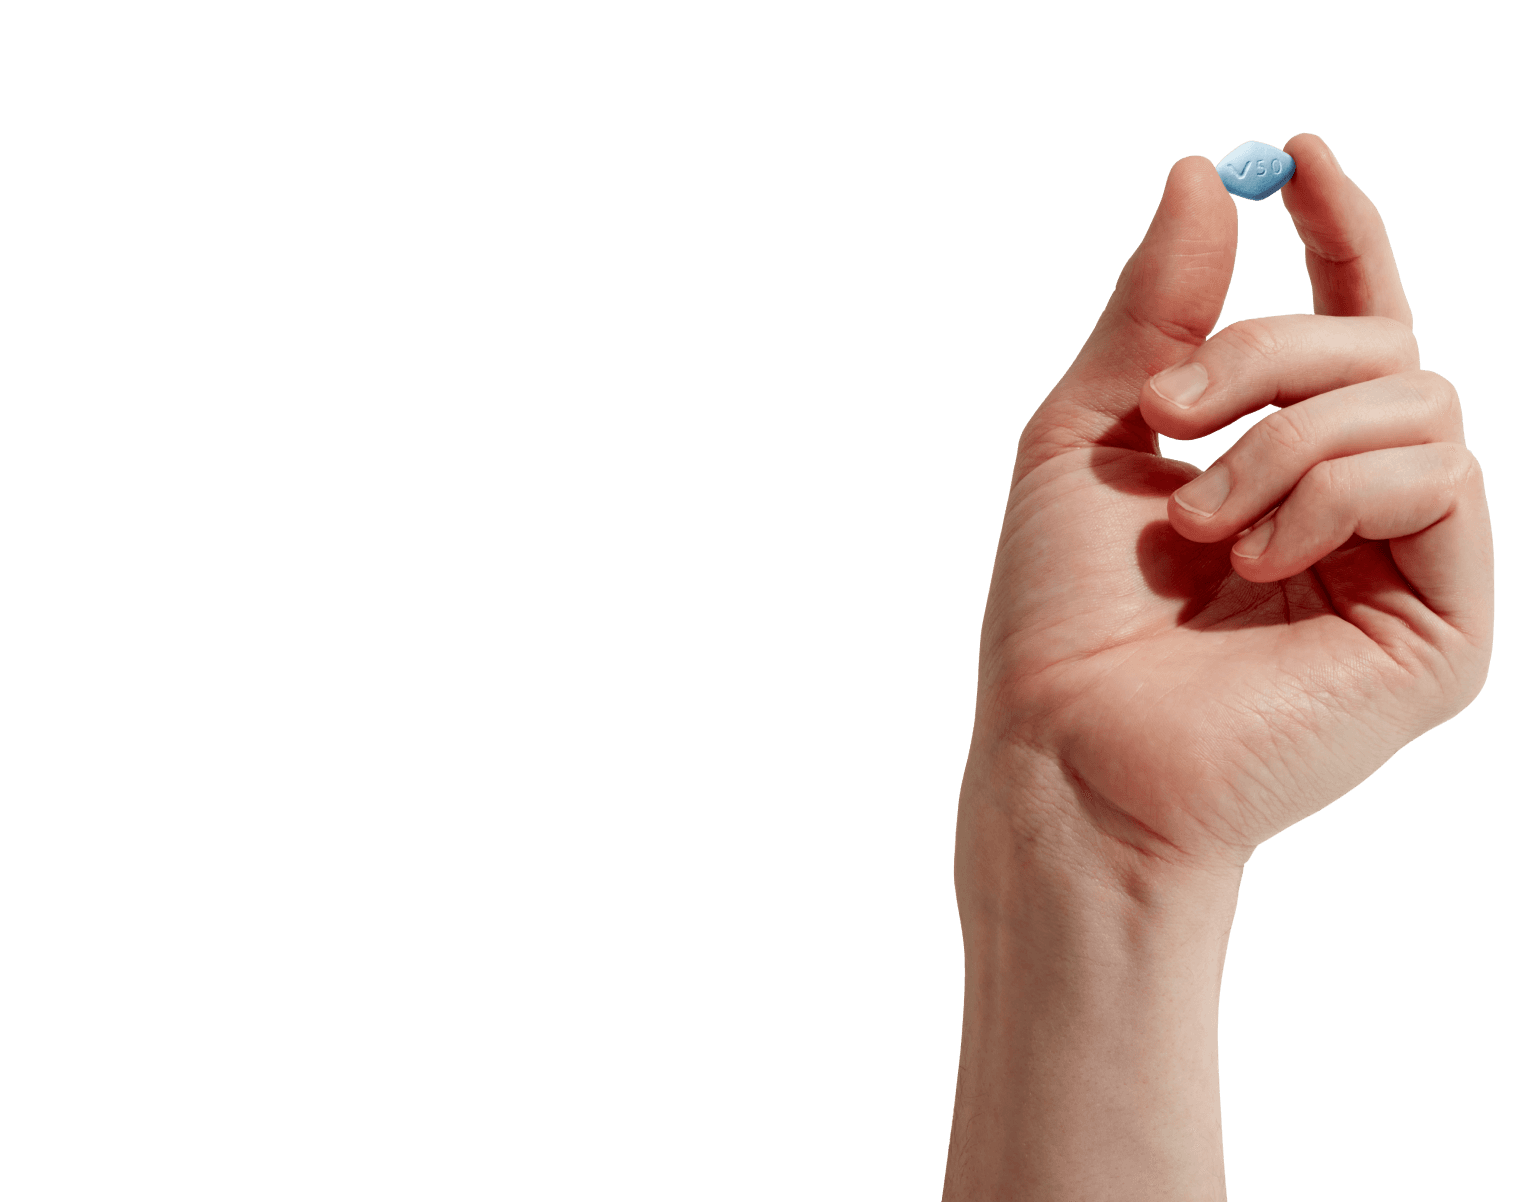 Hand holding a sildenafil pill